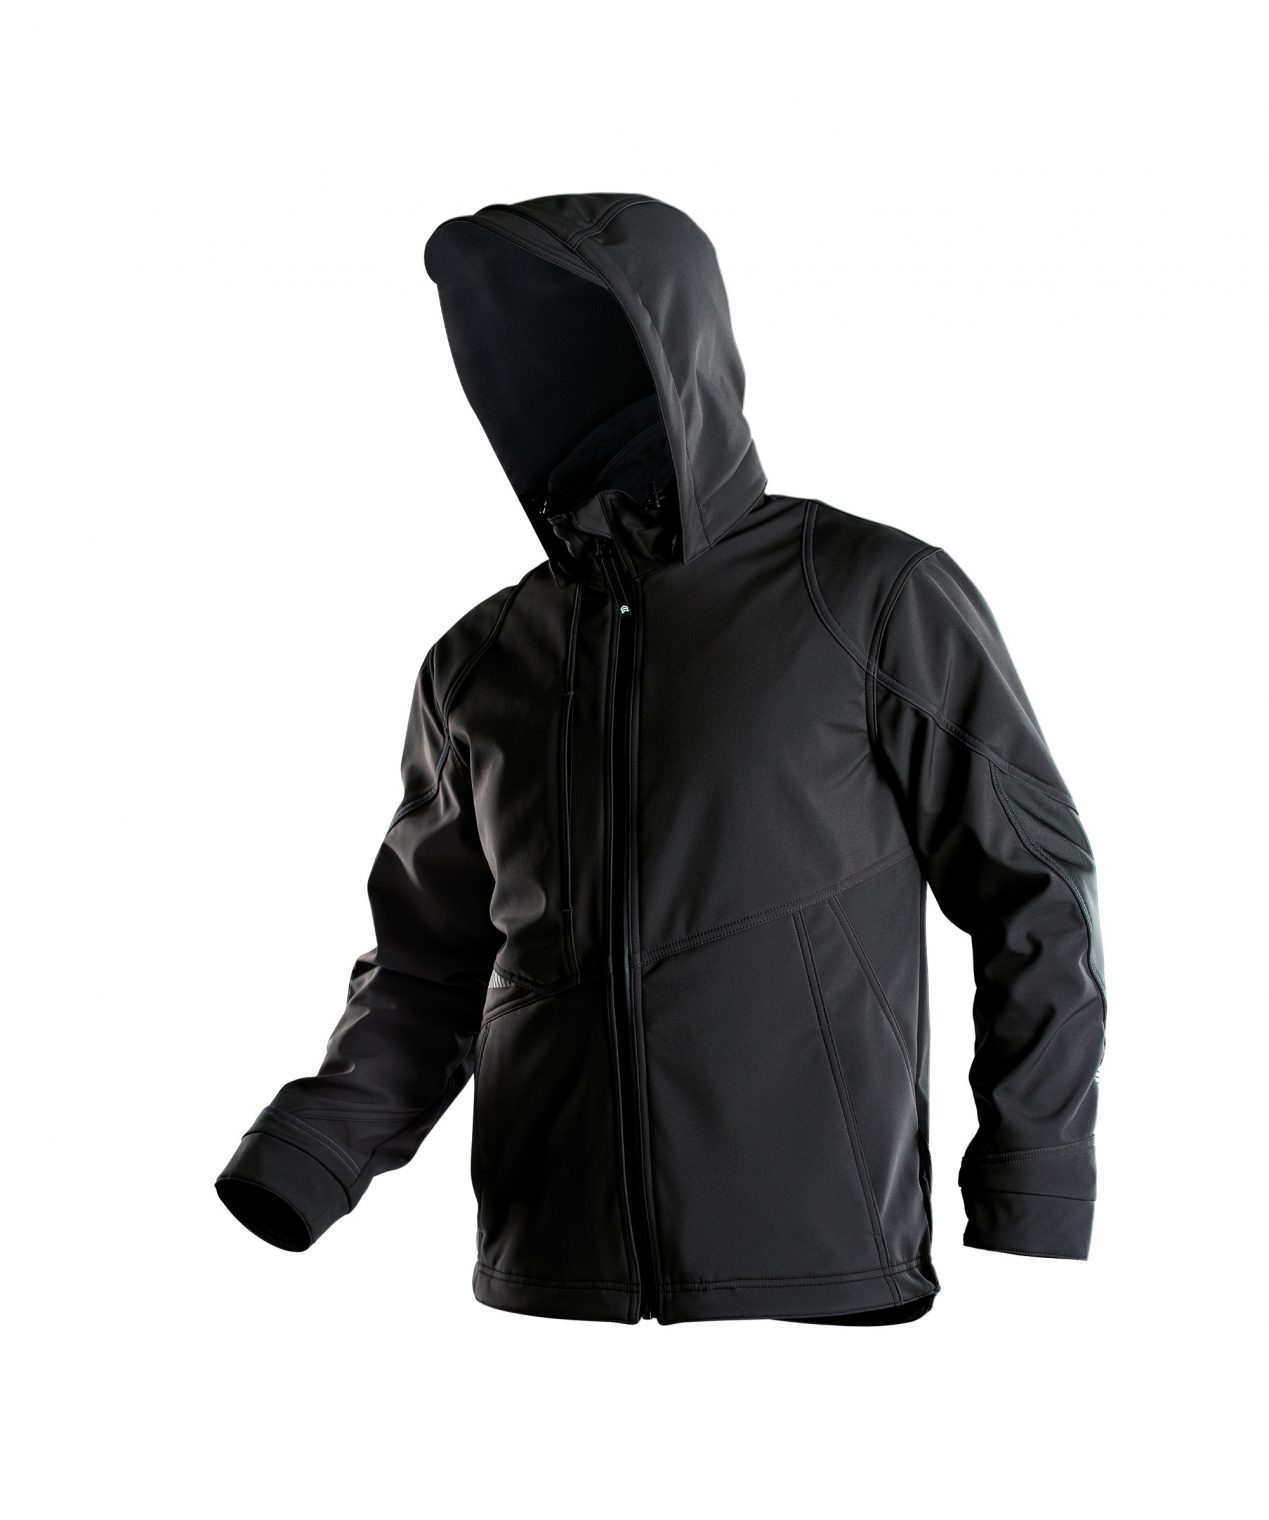 gravity softshell jacket black detail 2